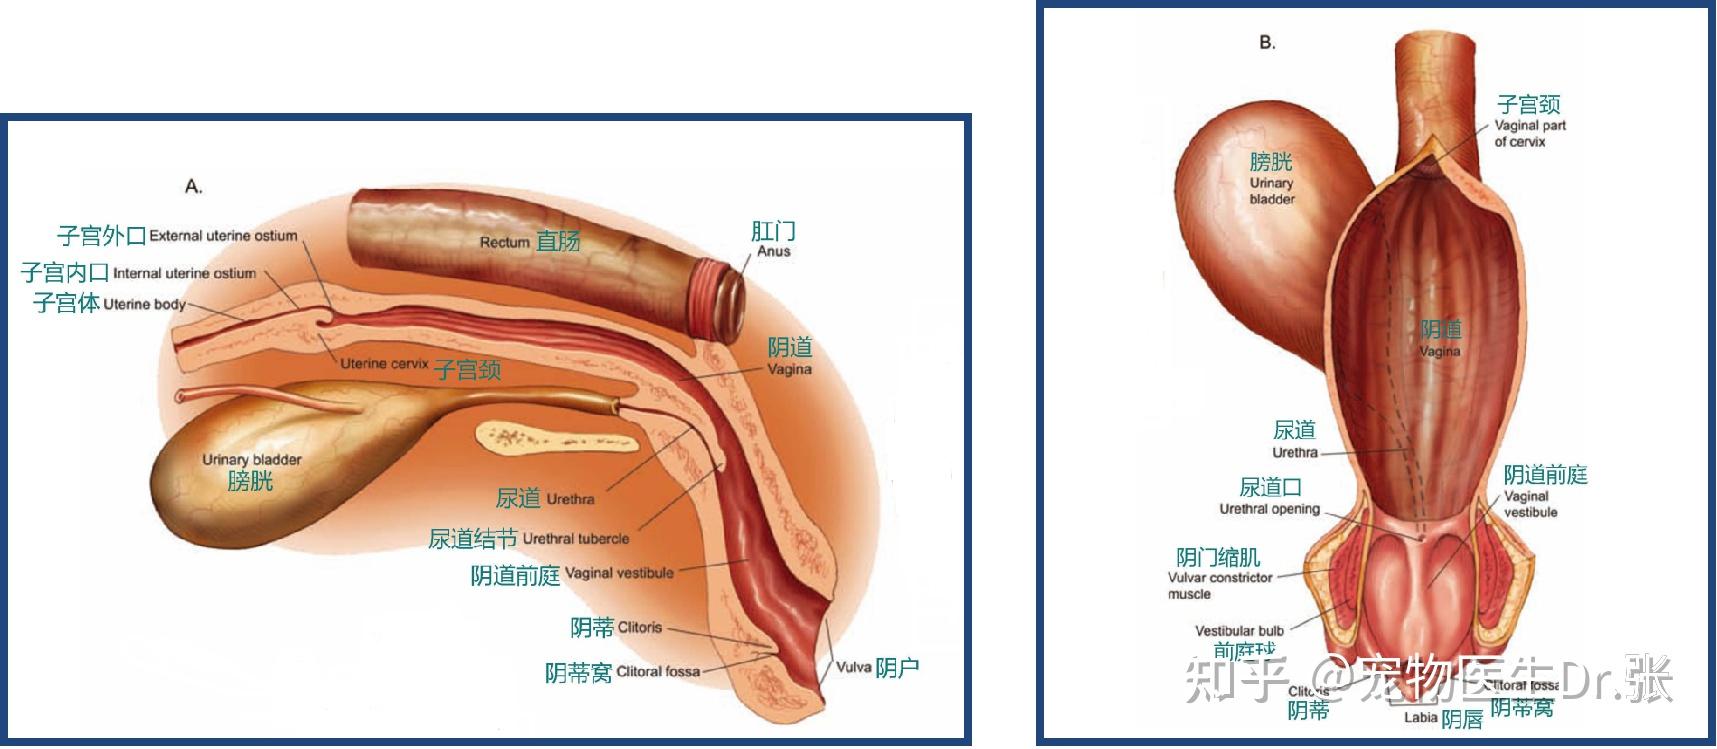 膀胱超声解剖图及解释图片